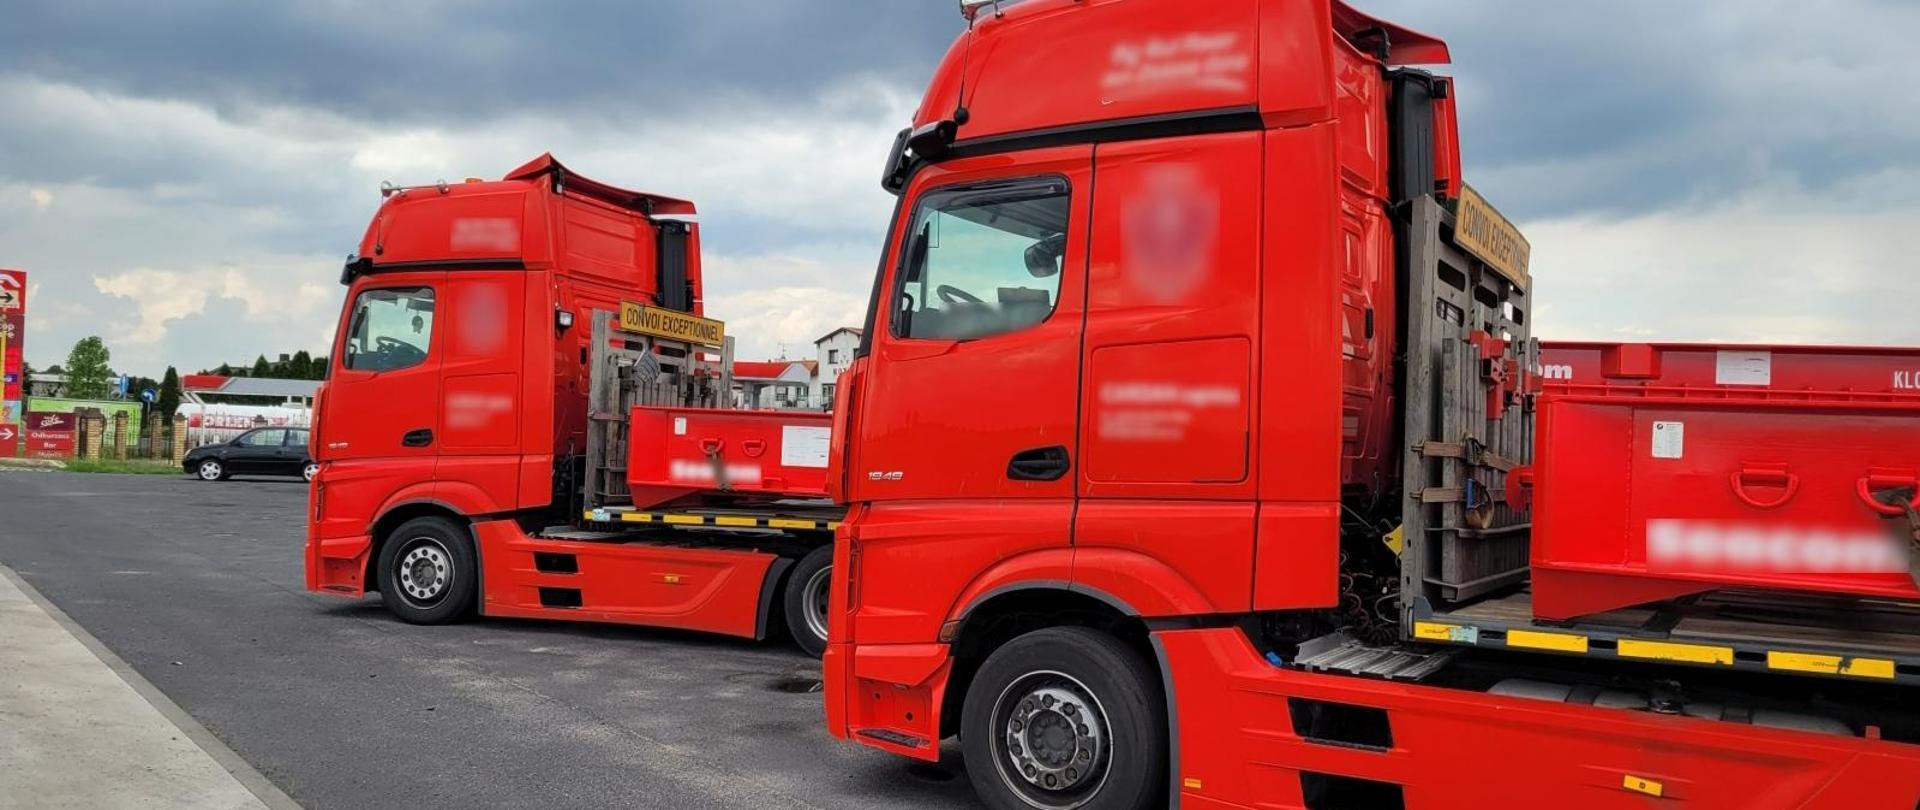 Dwa czerwone zespoły pojazdów ciężarowych stojące na parkingu stacji Orlen do kontroli.